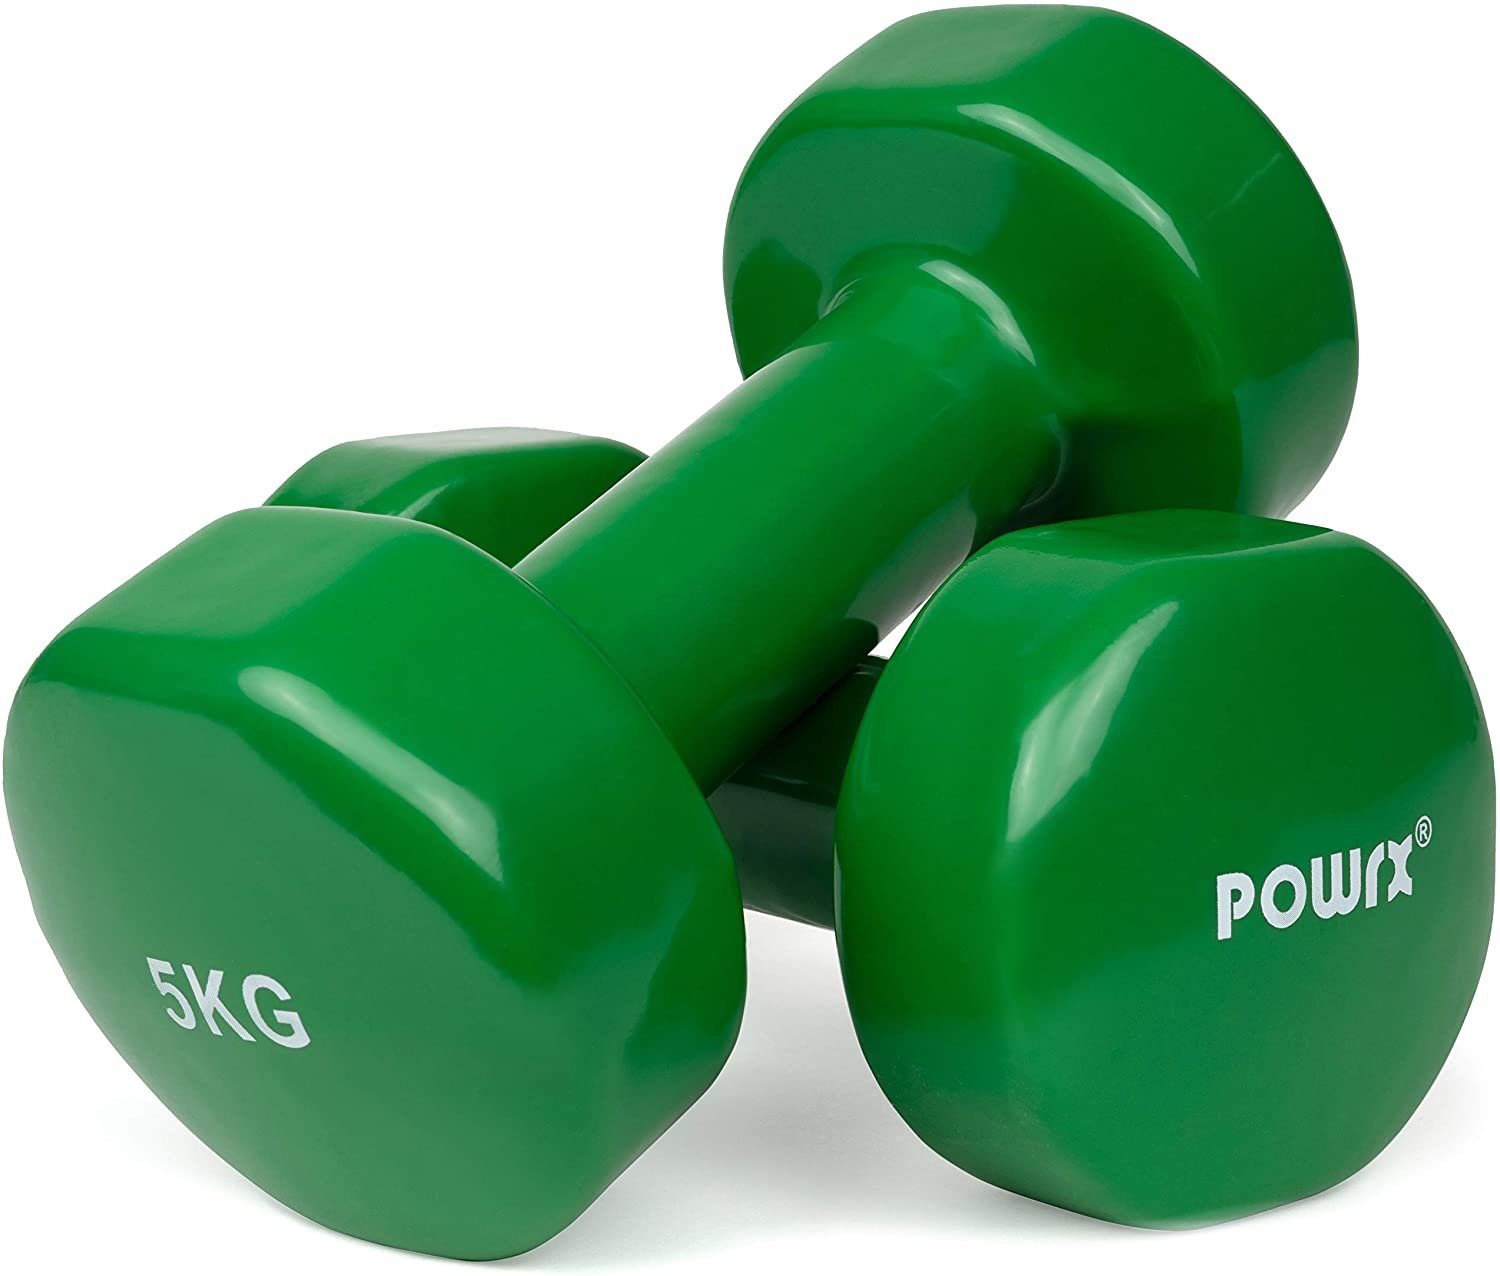 x (2 Gymnastikhantel POWRX Grn (2X4Kg) 4kg, Gymnastik/Aerobic/Pilates Paar Vinyl-Hanteln grün) 0,5-10kg,